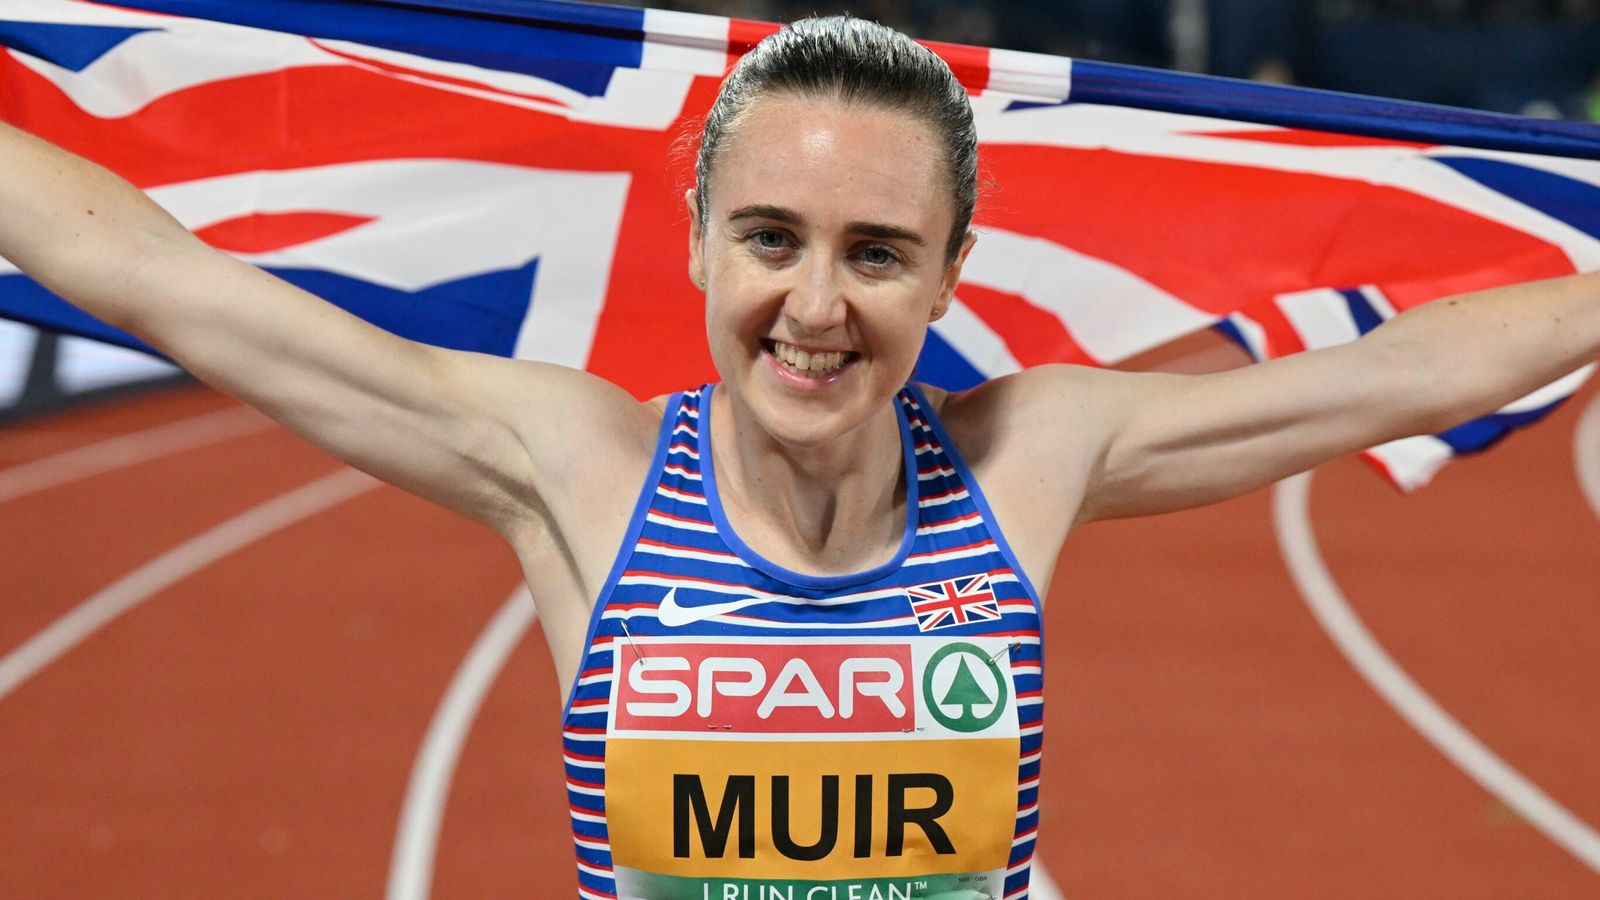 Mistrzostwa Europy: Laura Muir wygrywa europejskie 1500 mln złota, aby zakończyć „szalone” lato |  Wiadomości lekkoatletyczne